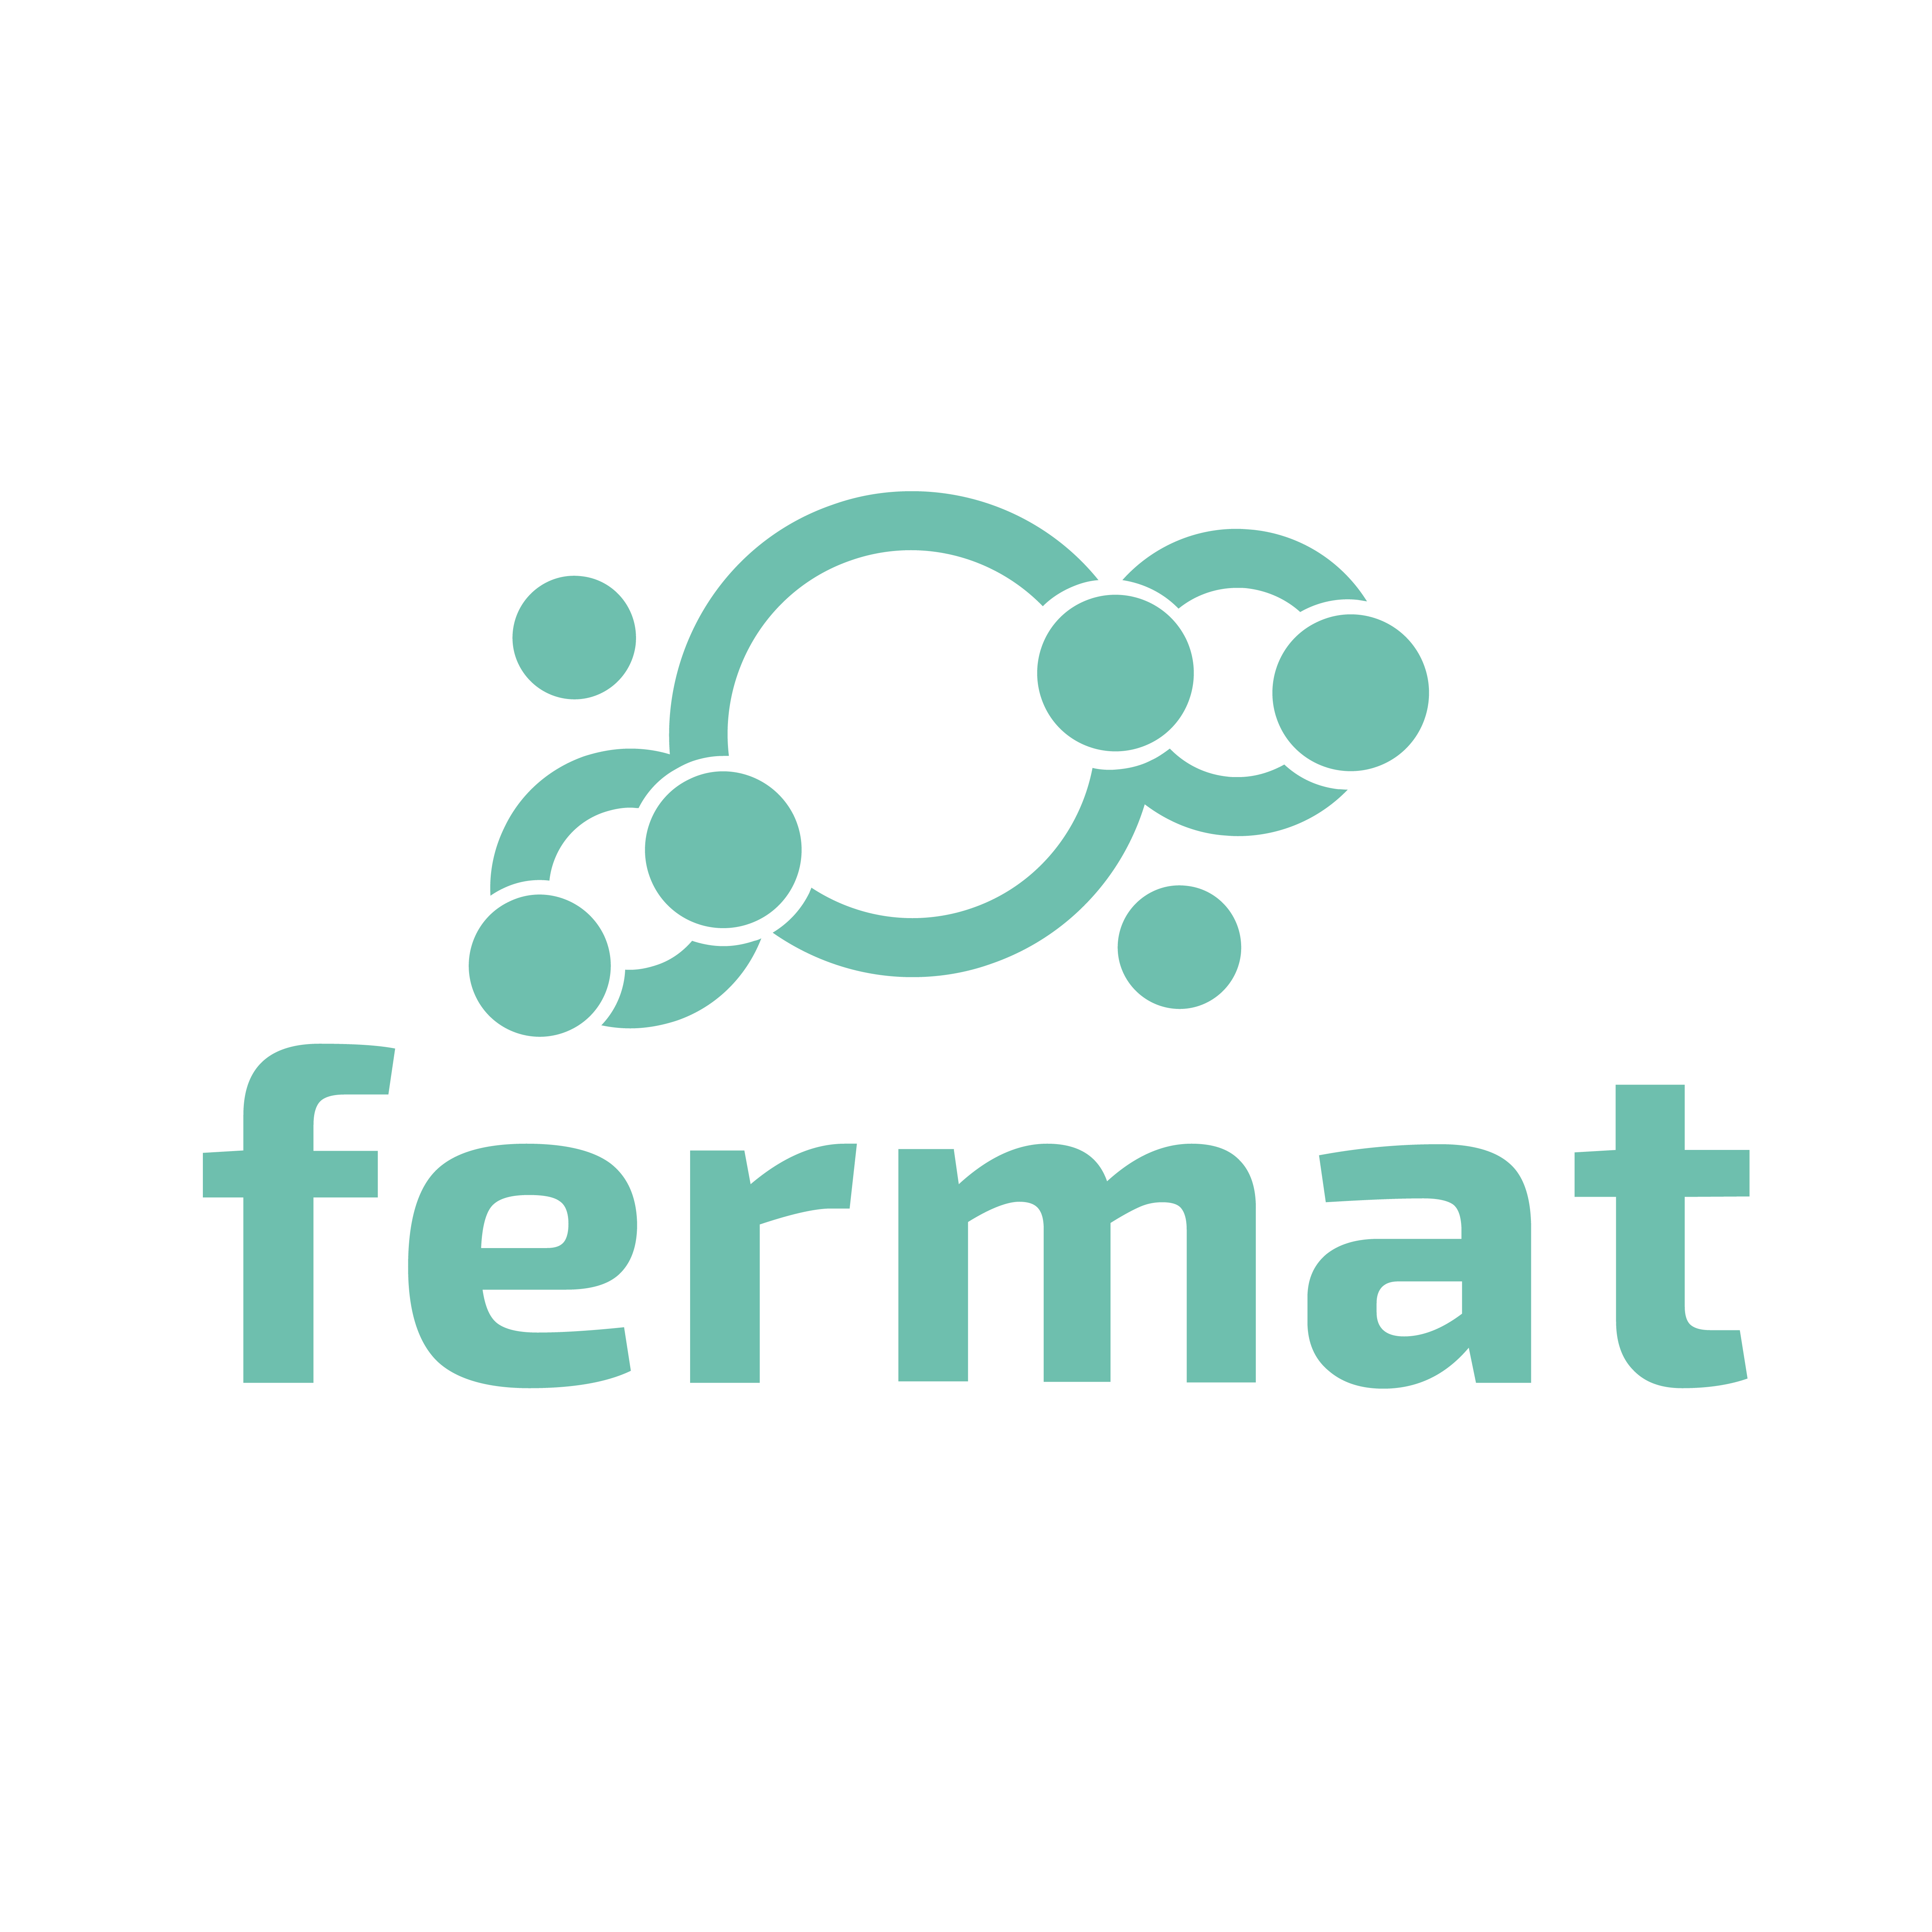 Fermat.jpg